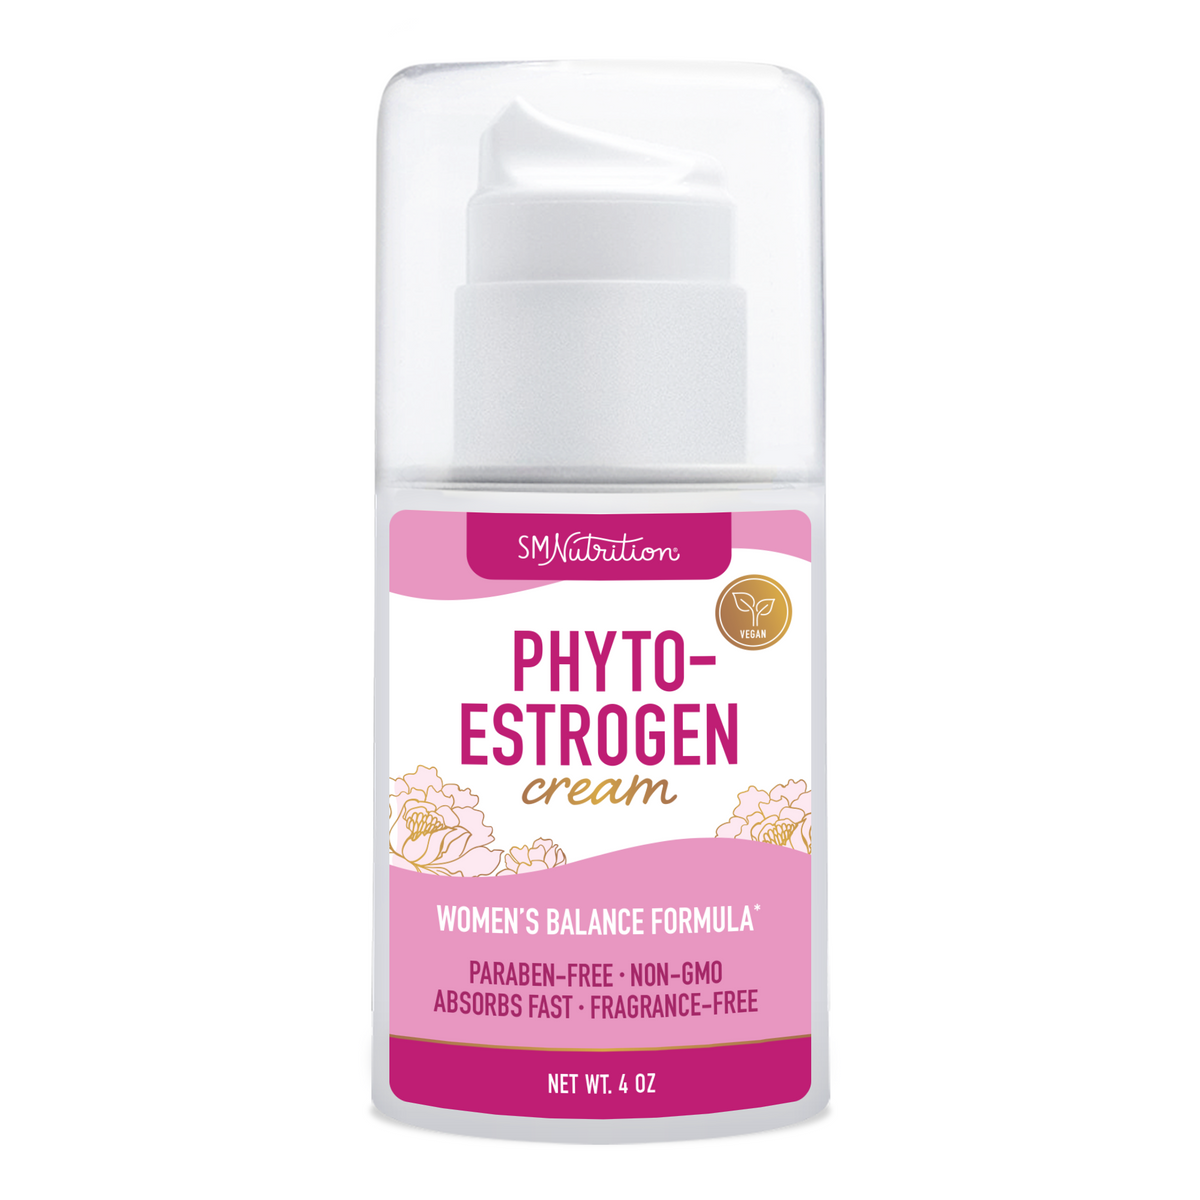 Phyto-Estrogen Cream, 4oz. Pump